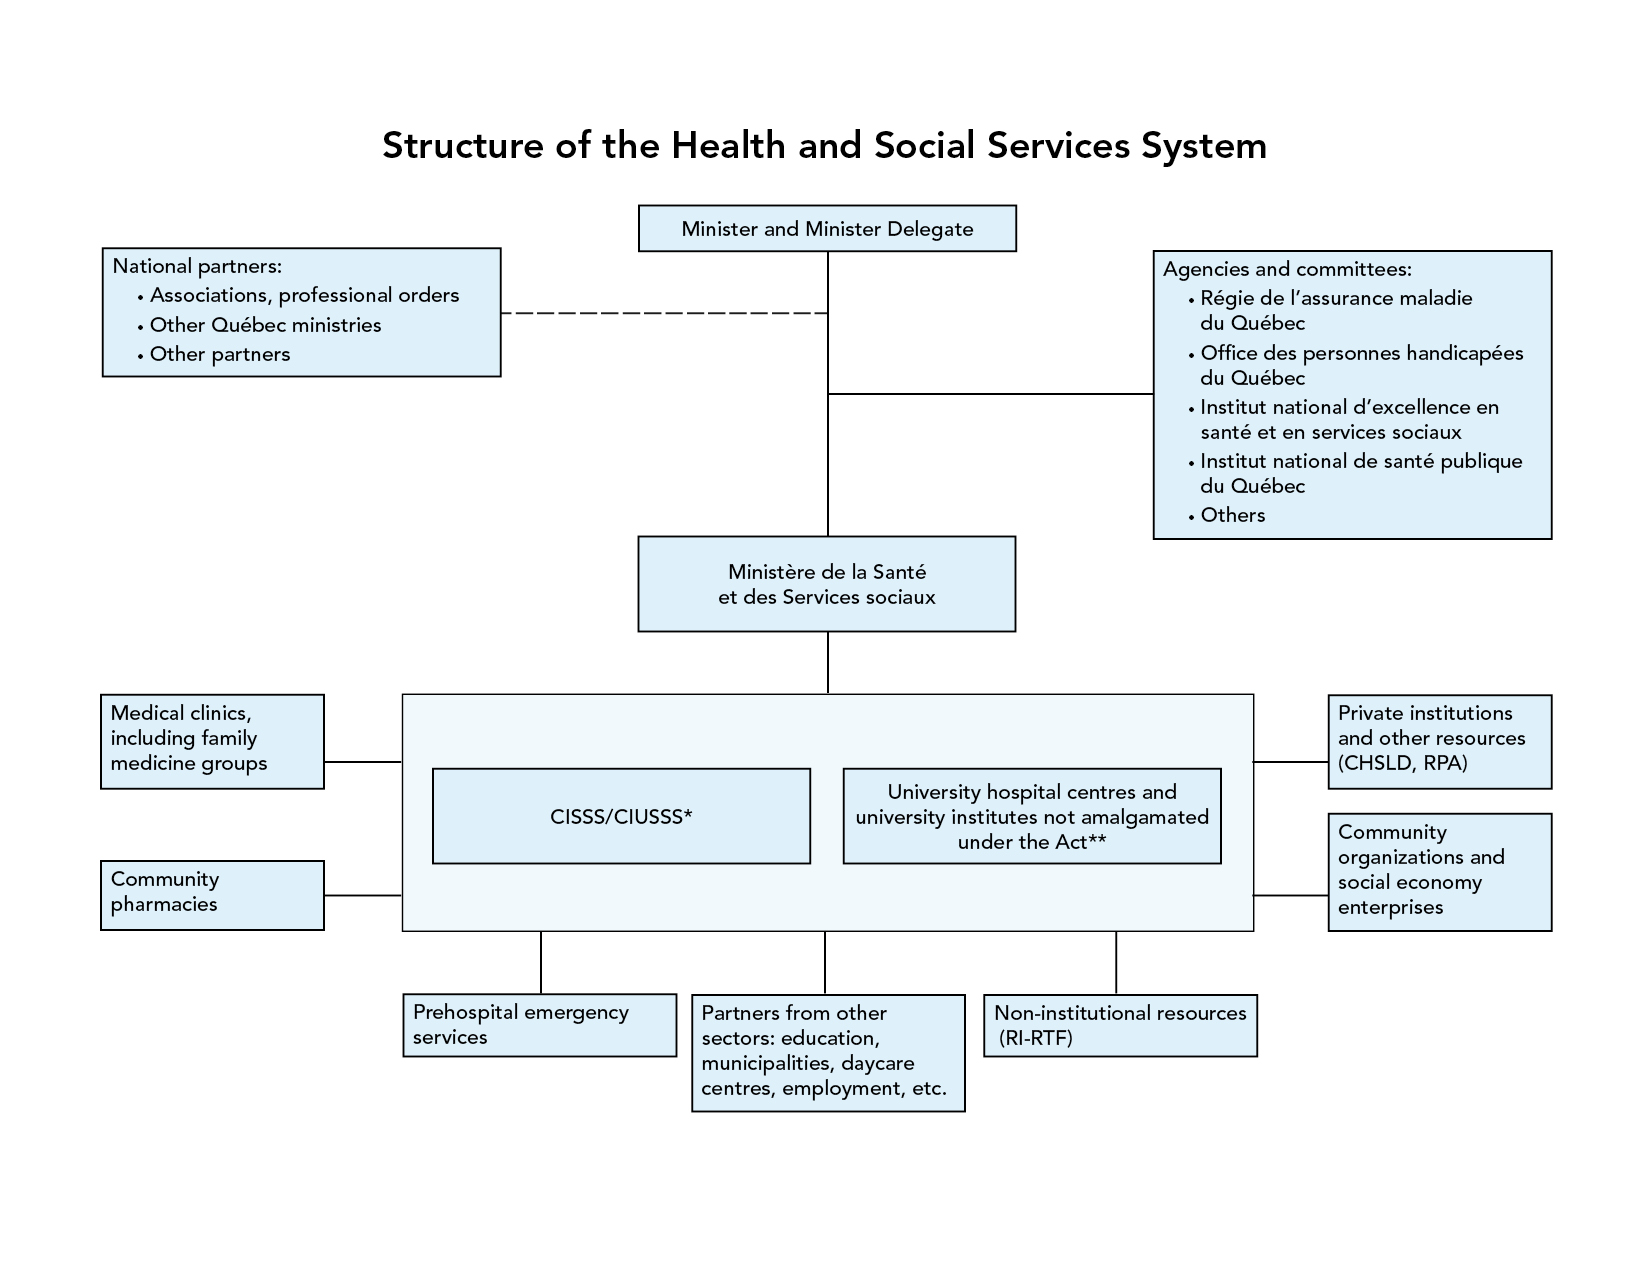 Représentation du système de santé et de services sociaux.